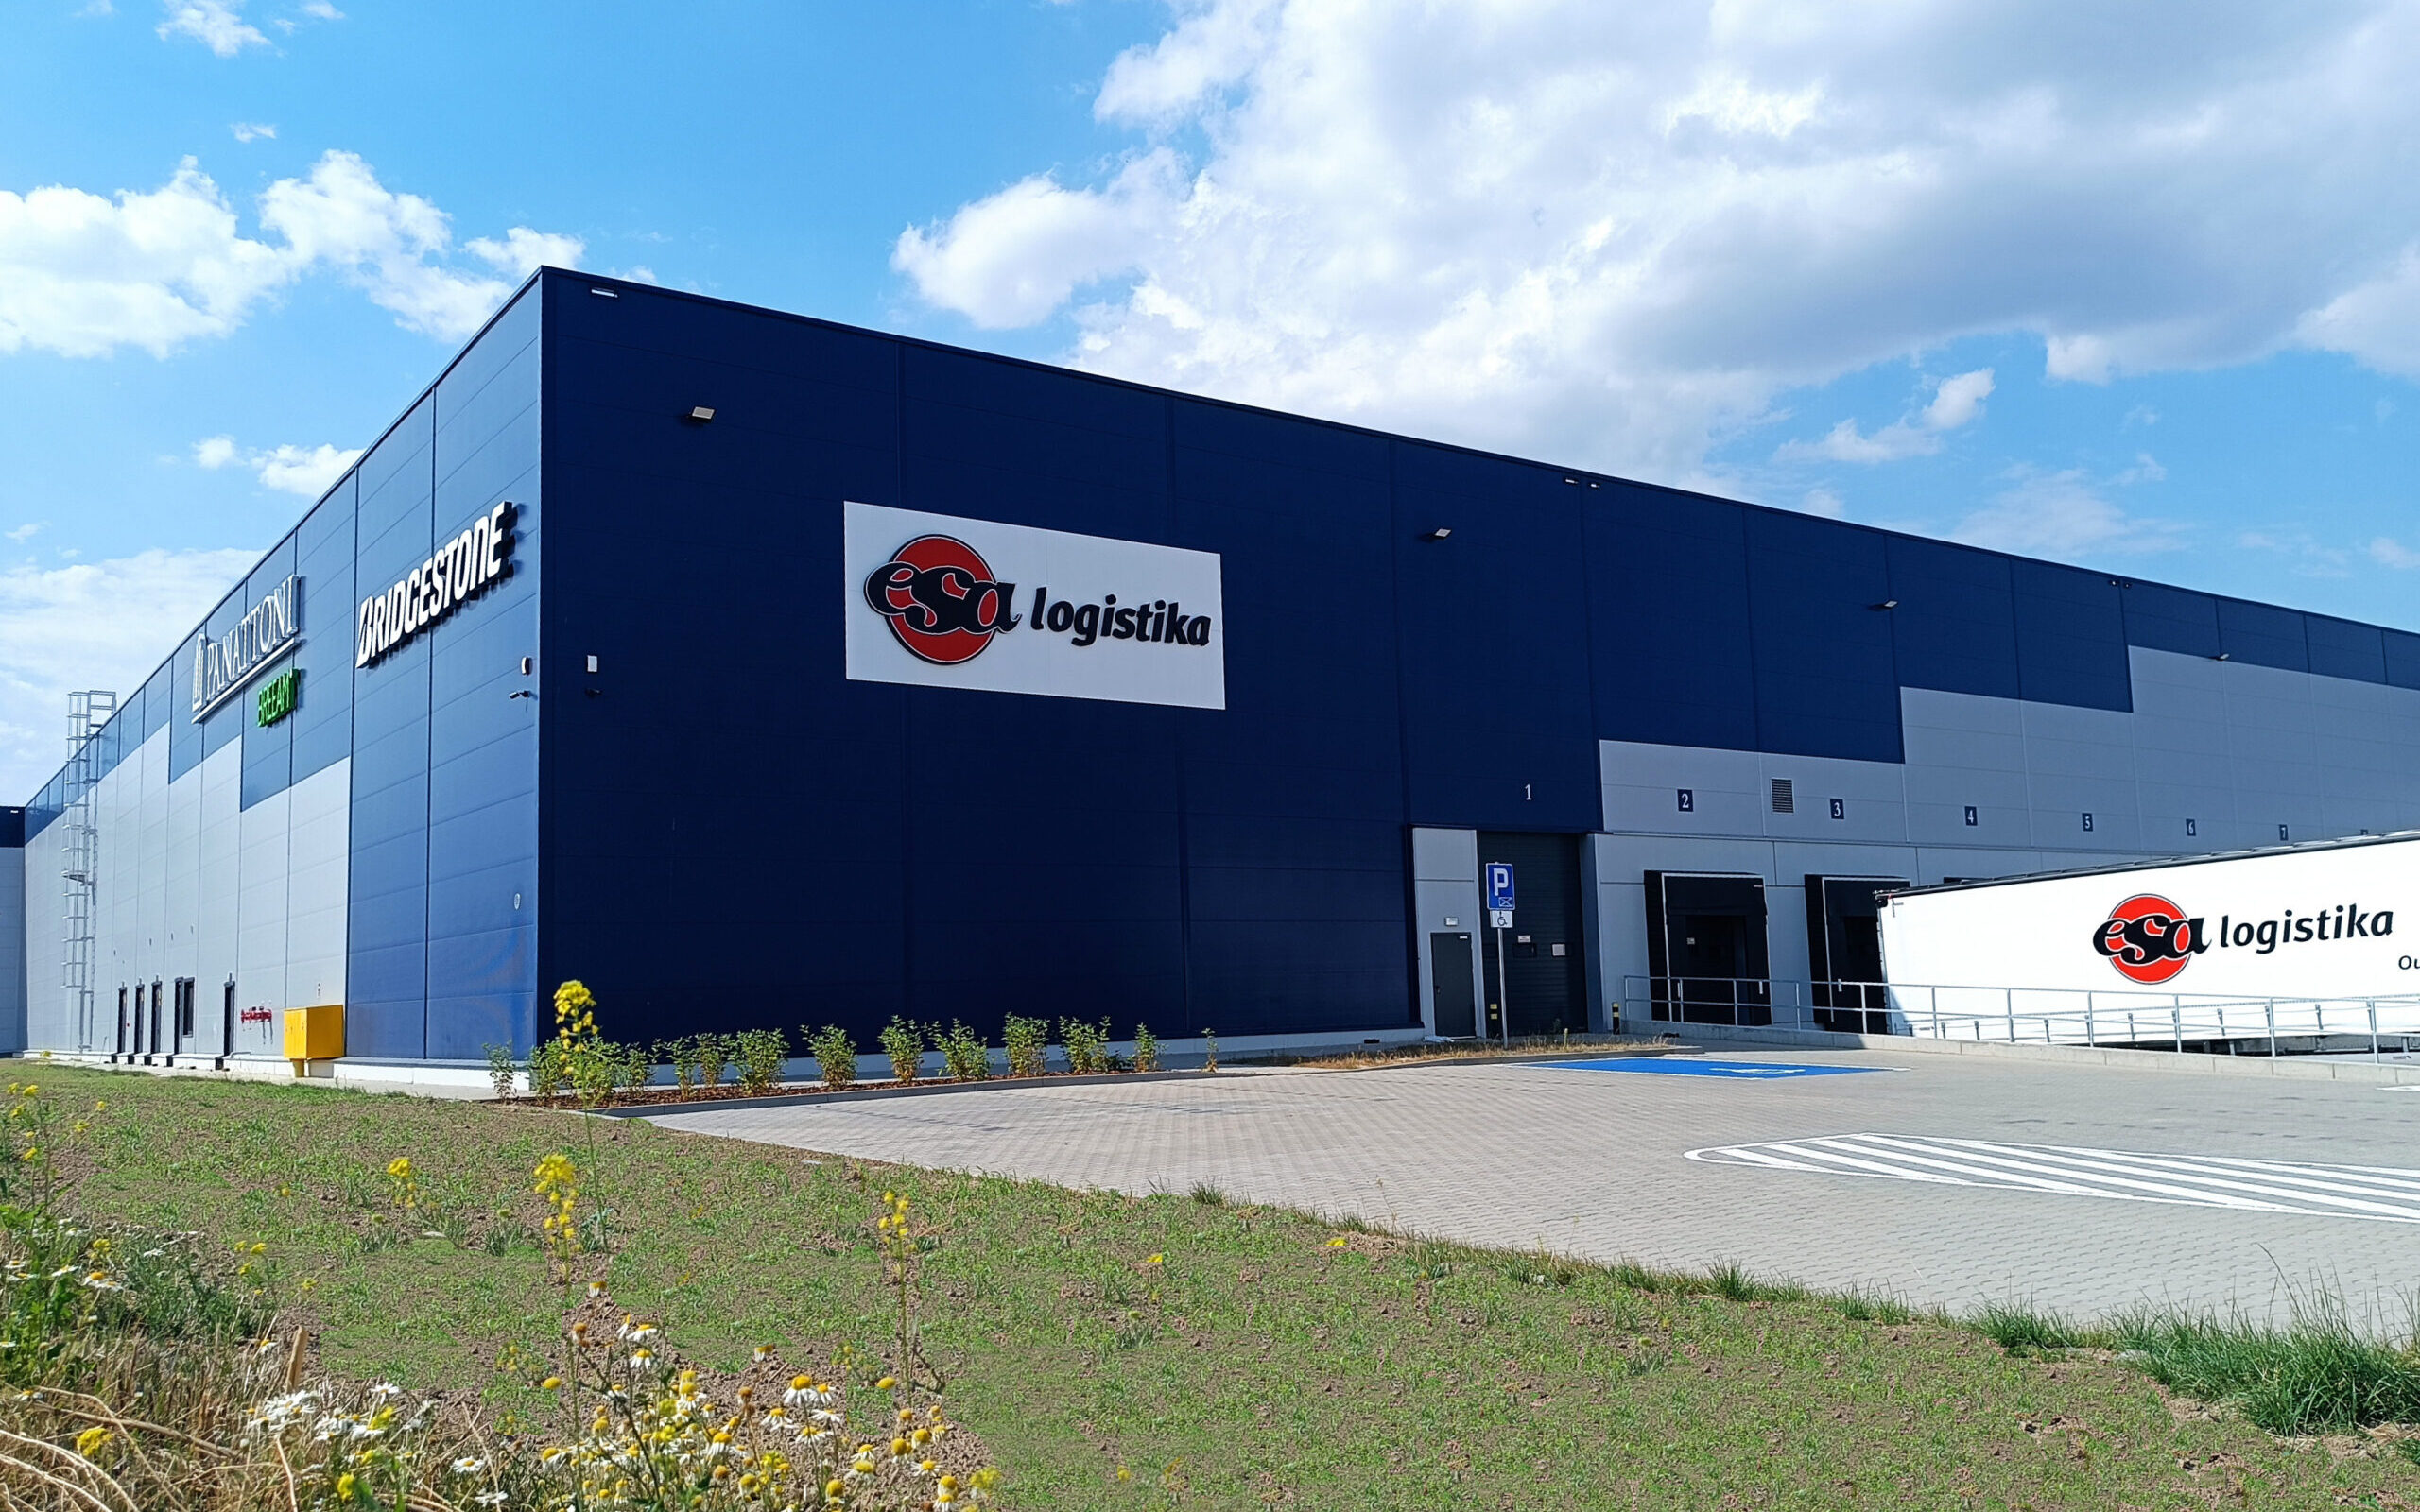 Bridgestone i ESA logistika uruchomili największy przyprodukcyjny magazyn opon w regionie